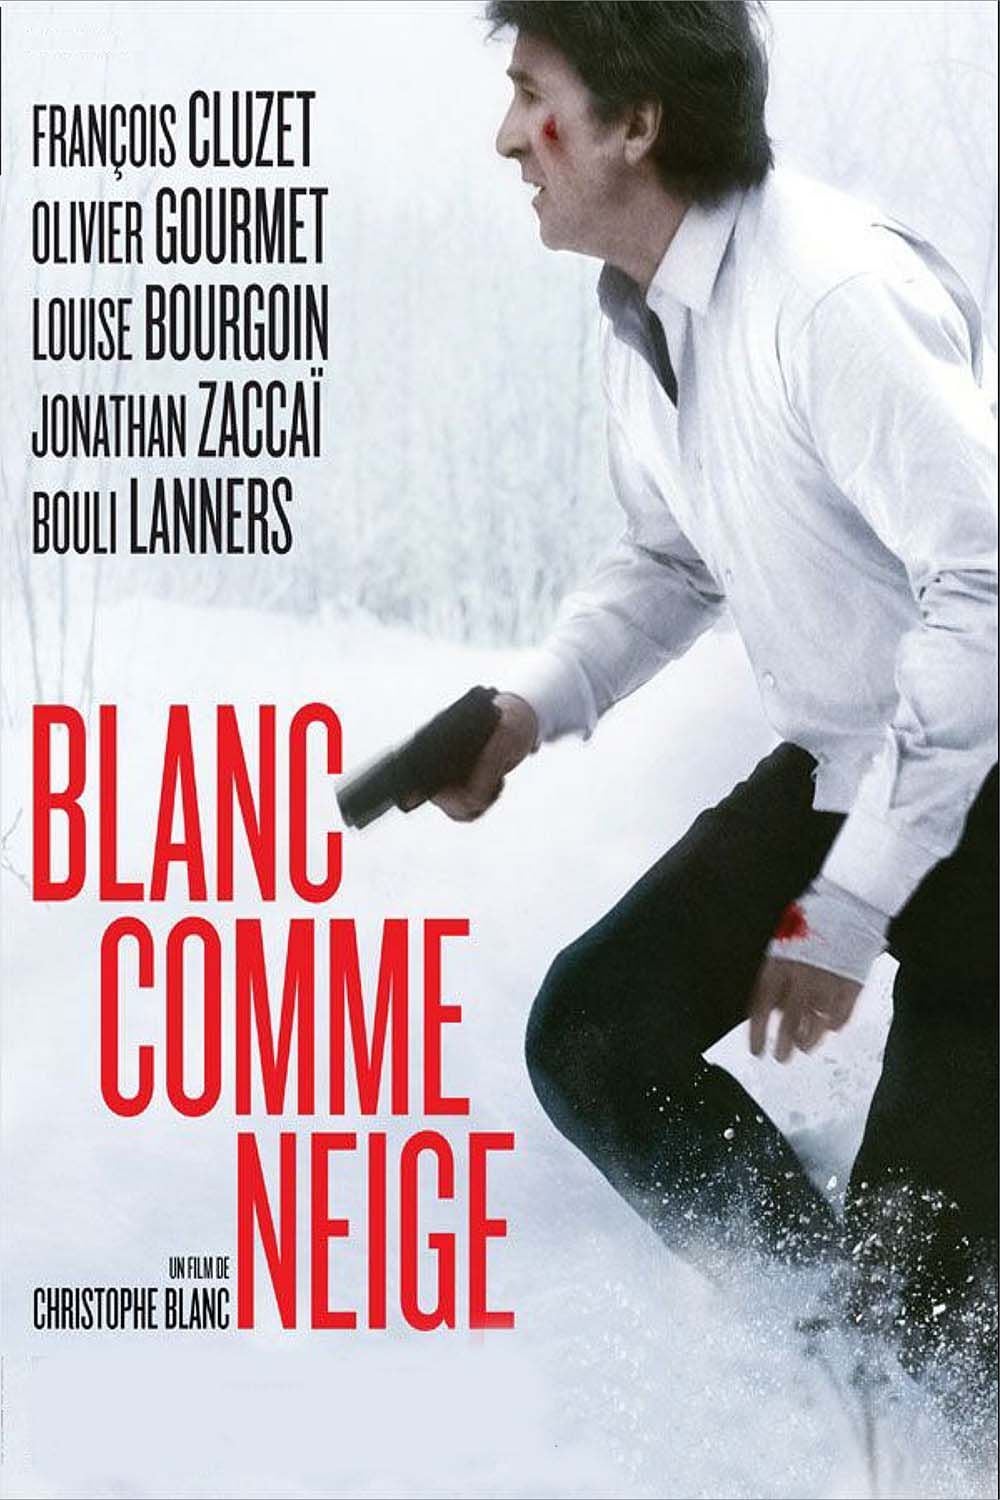 Affiche du film "Blanc comme neige"